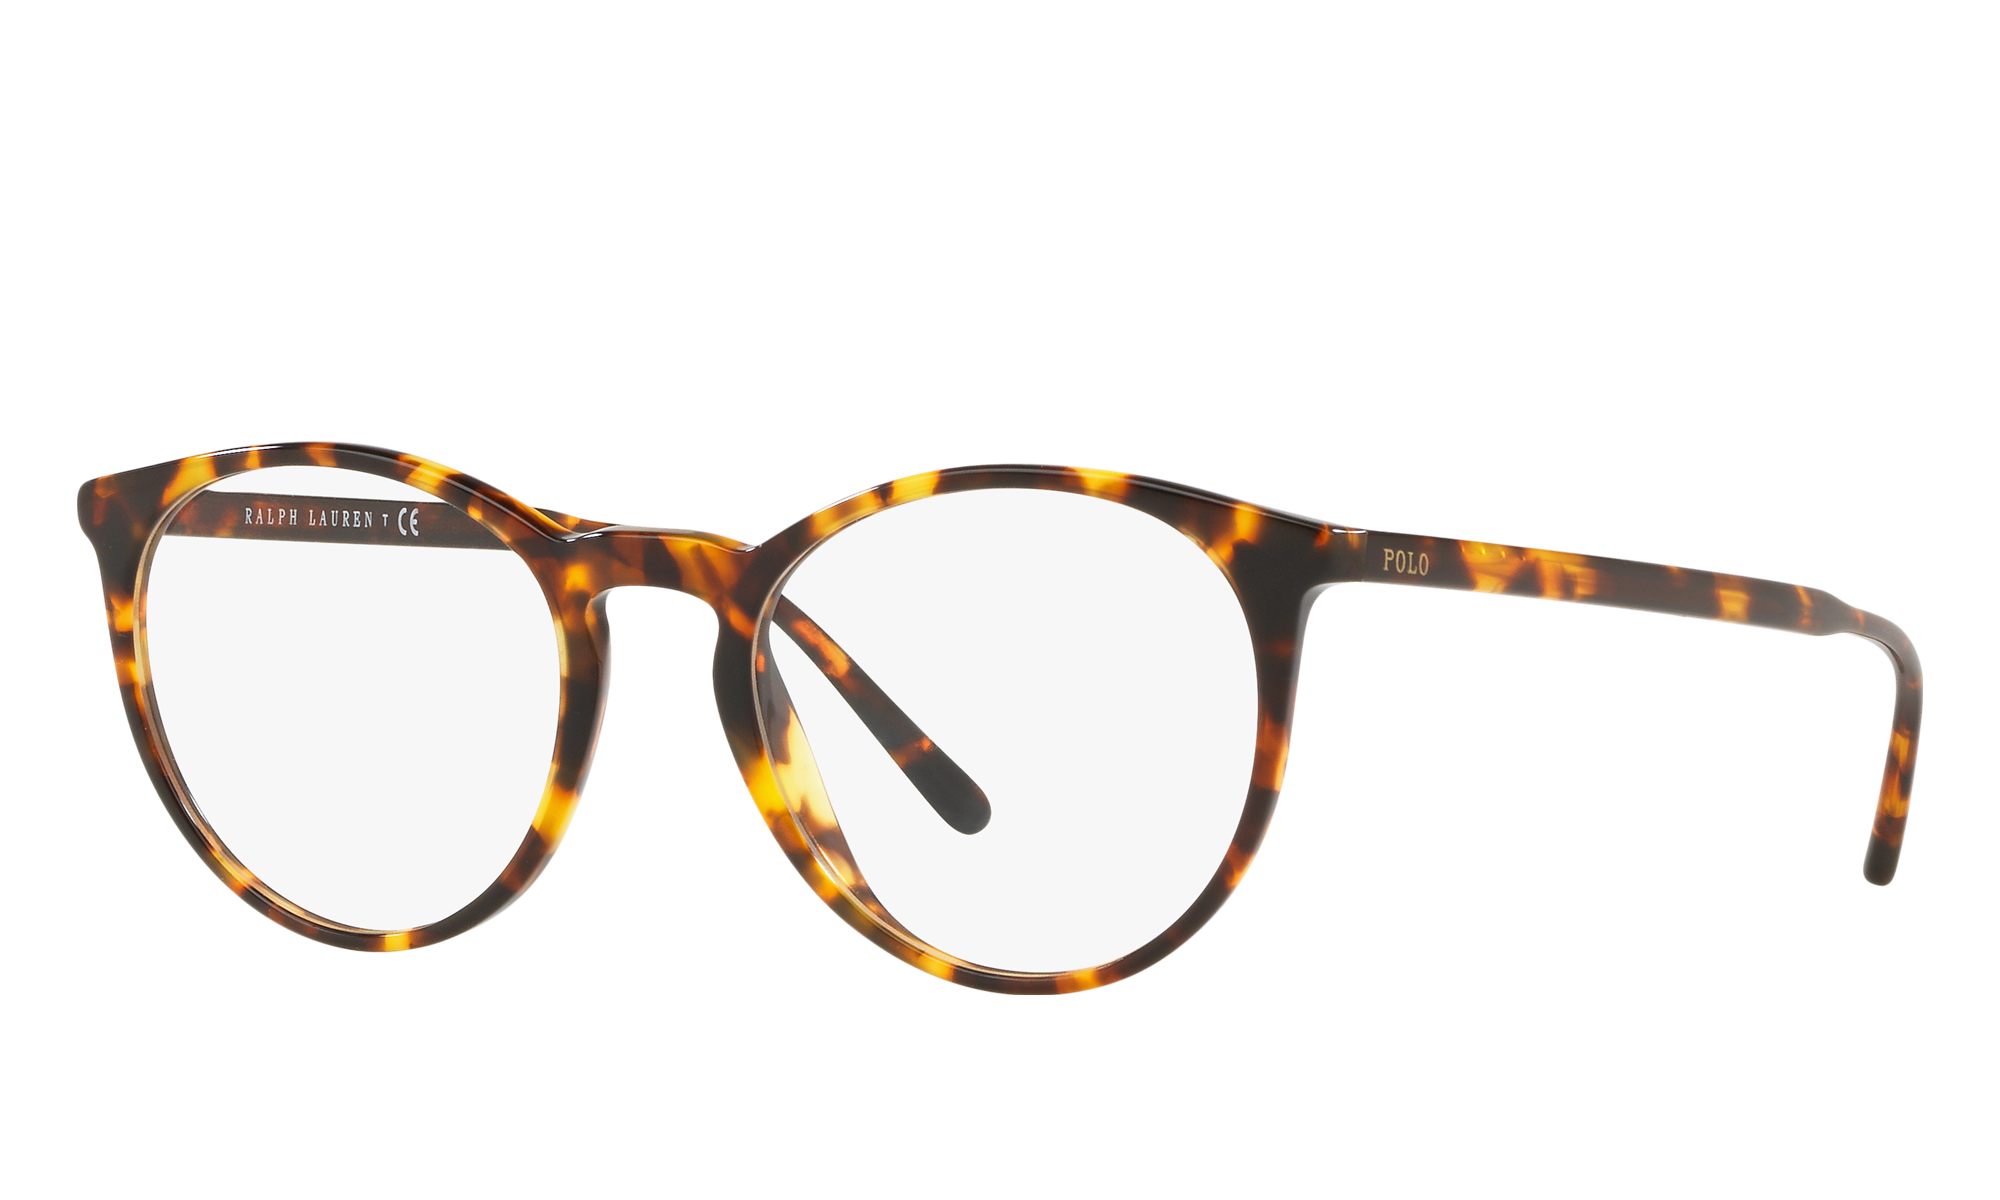 polo round eyeglass frames